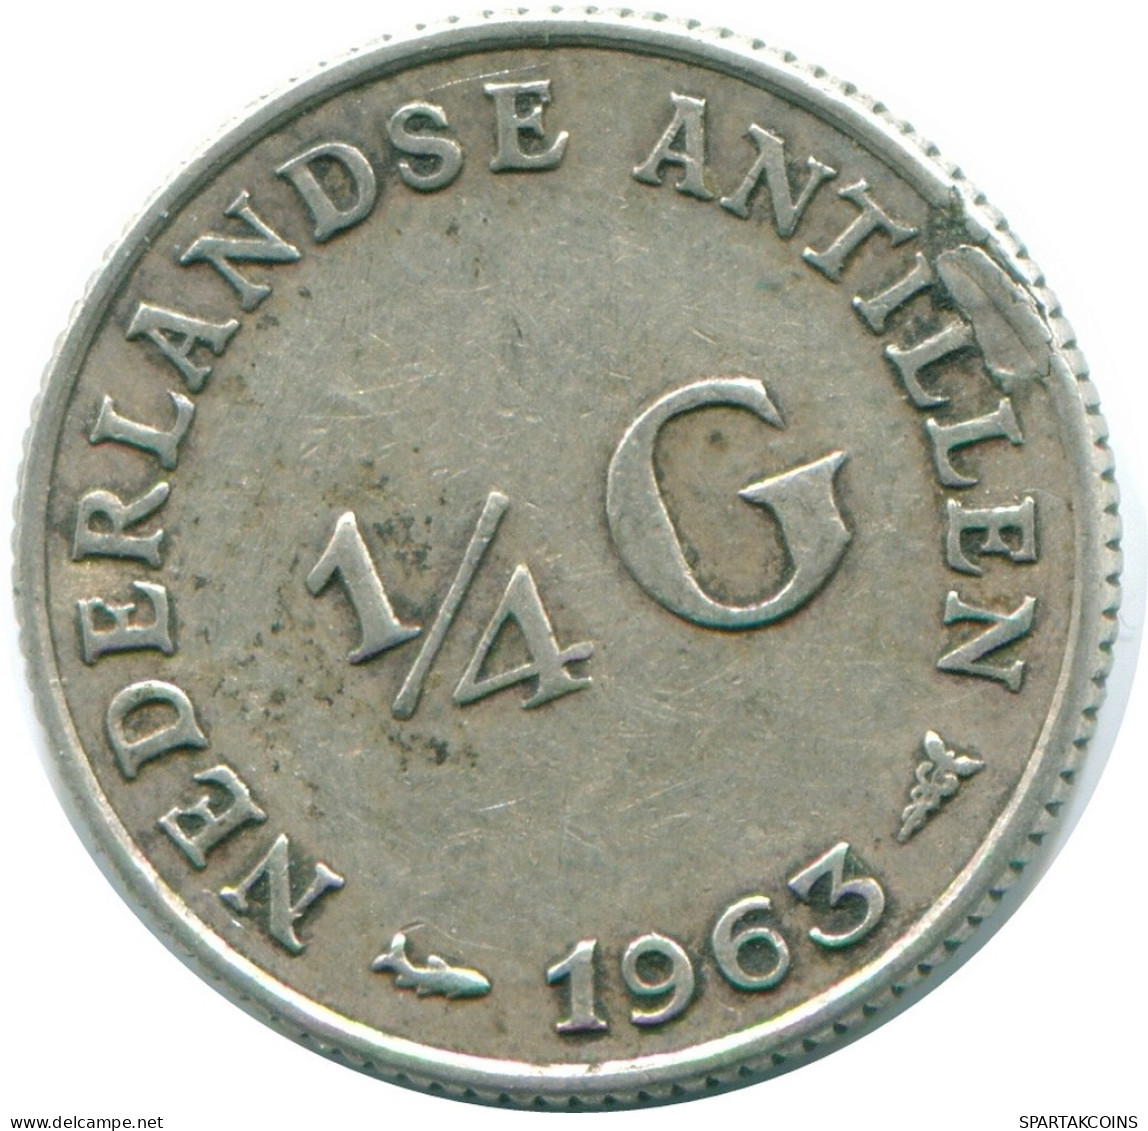 1/4 GULDEN 1963 NIEDERLÄNDISCHE ANTILLEN SILBER Koloniale Münze #NL11234.4.D.A - Nederlandse Antillen